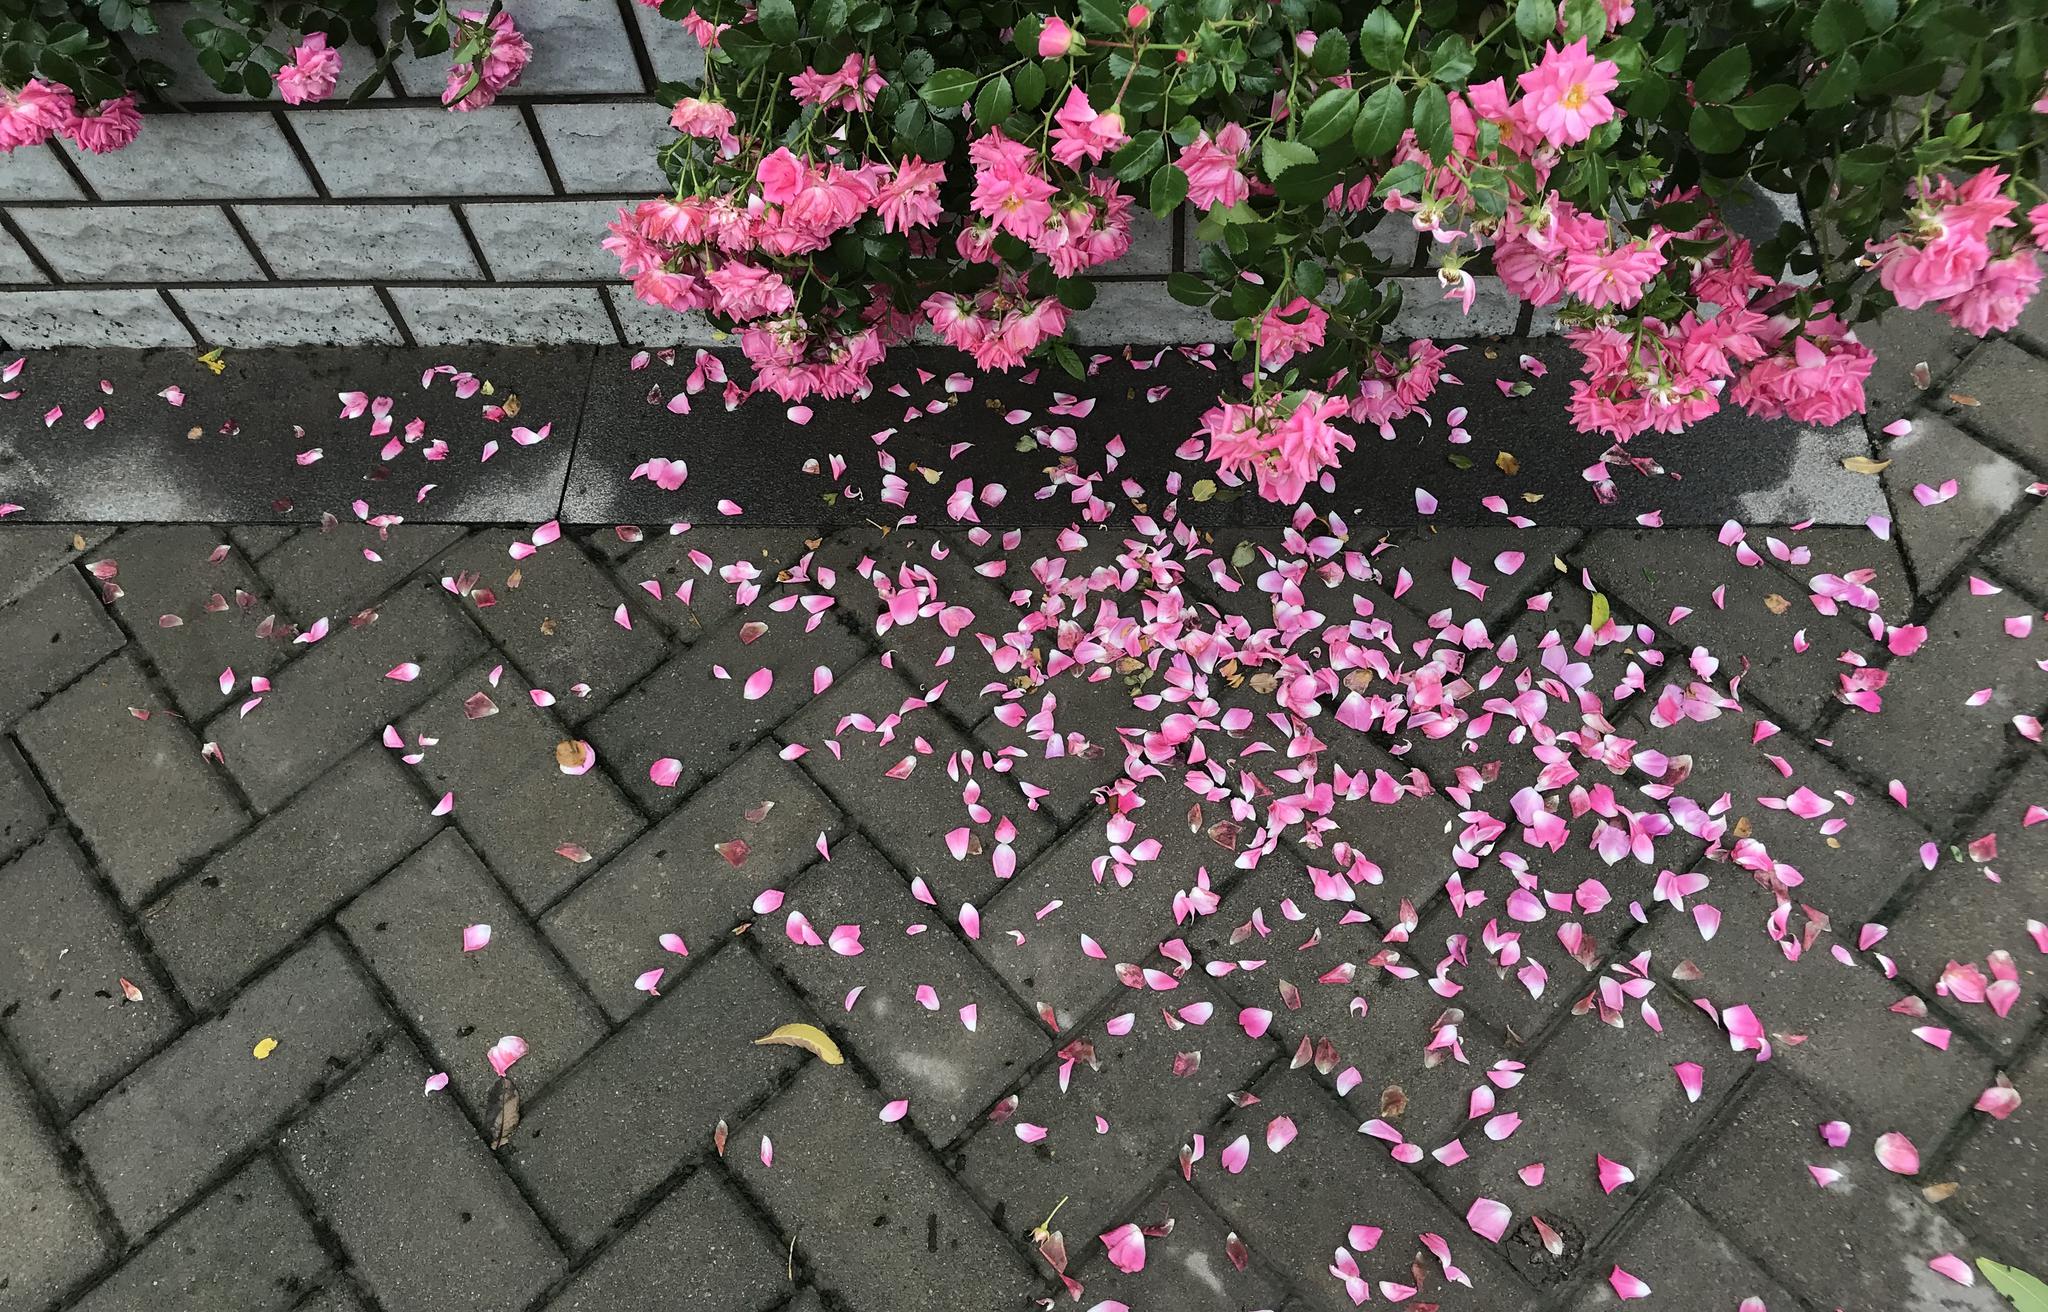 雨后蔷薇 花落满地